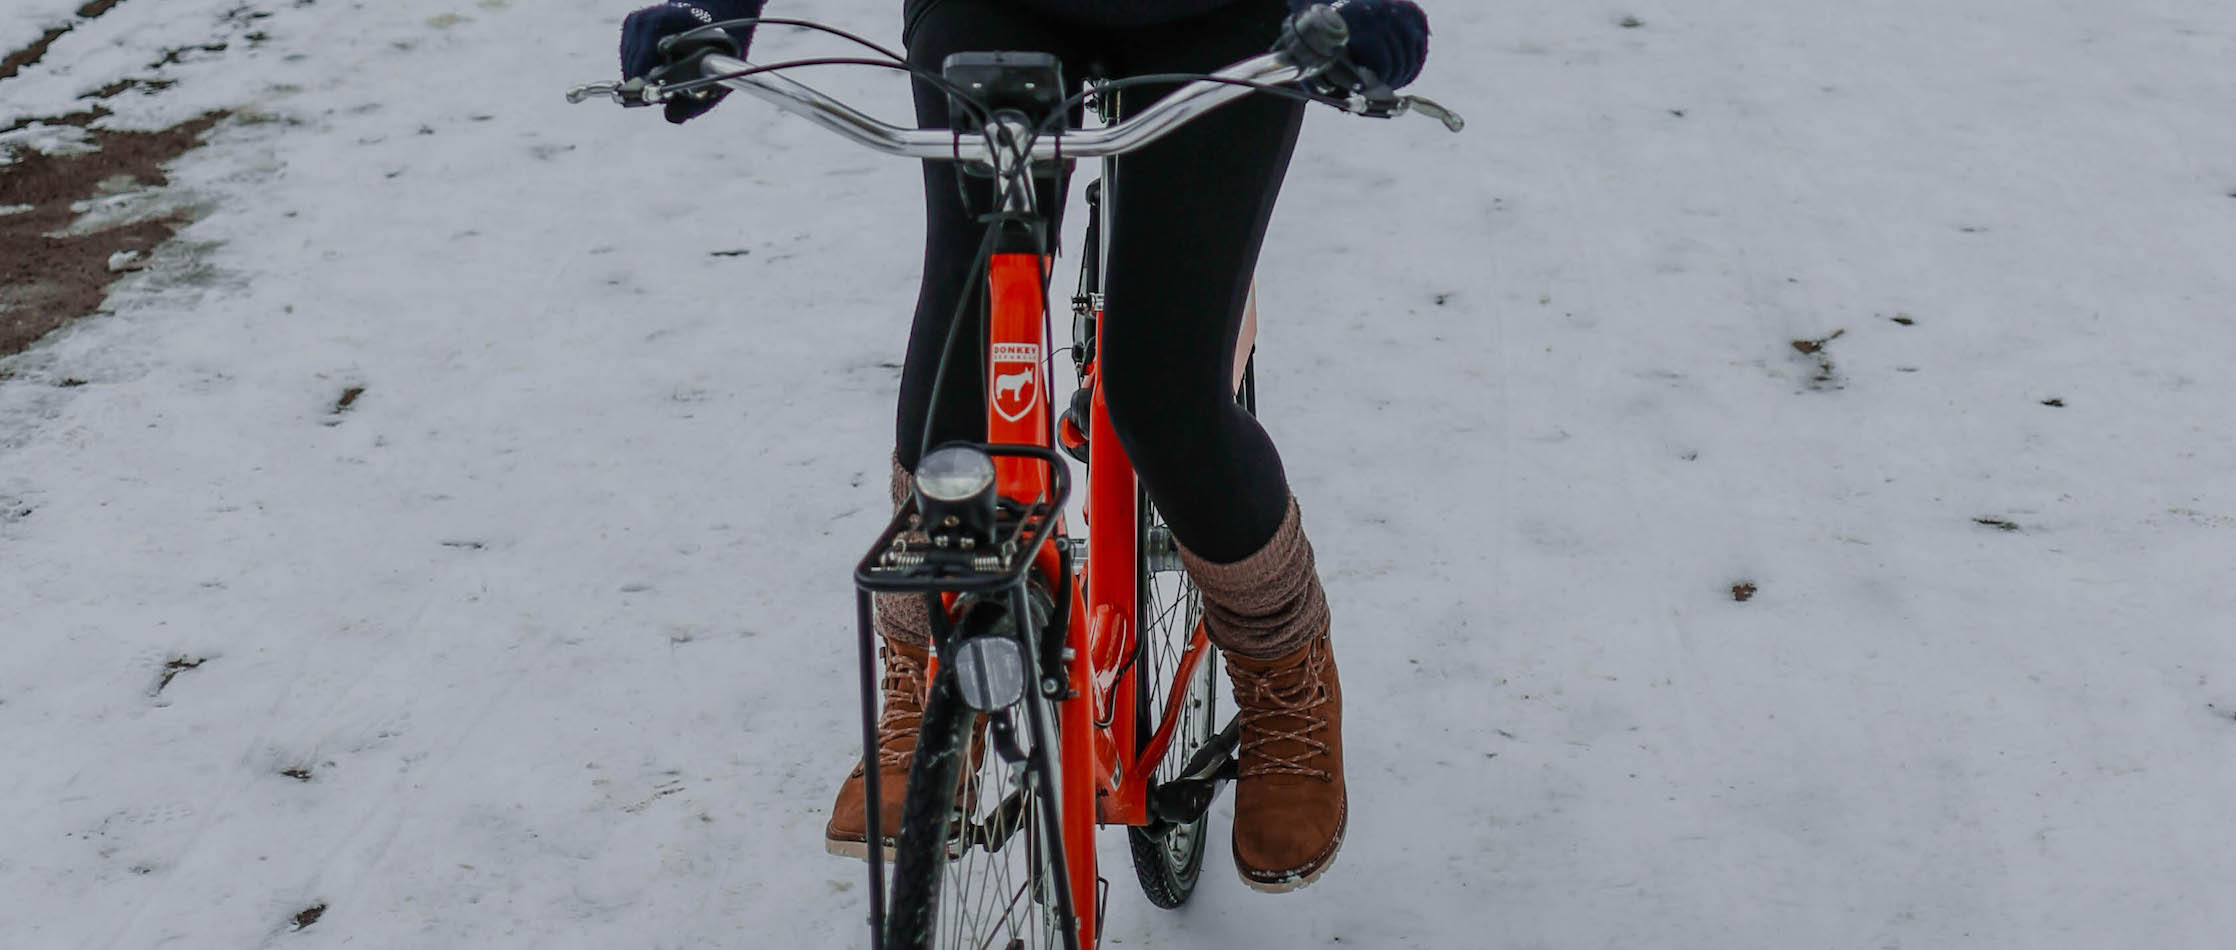 best winter jacket for bike commuting